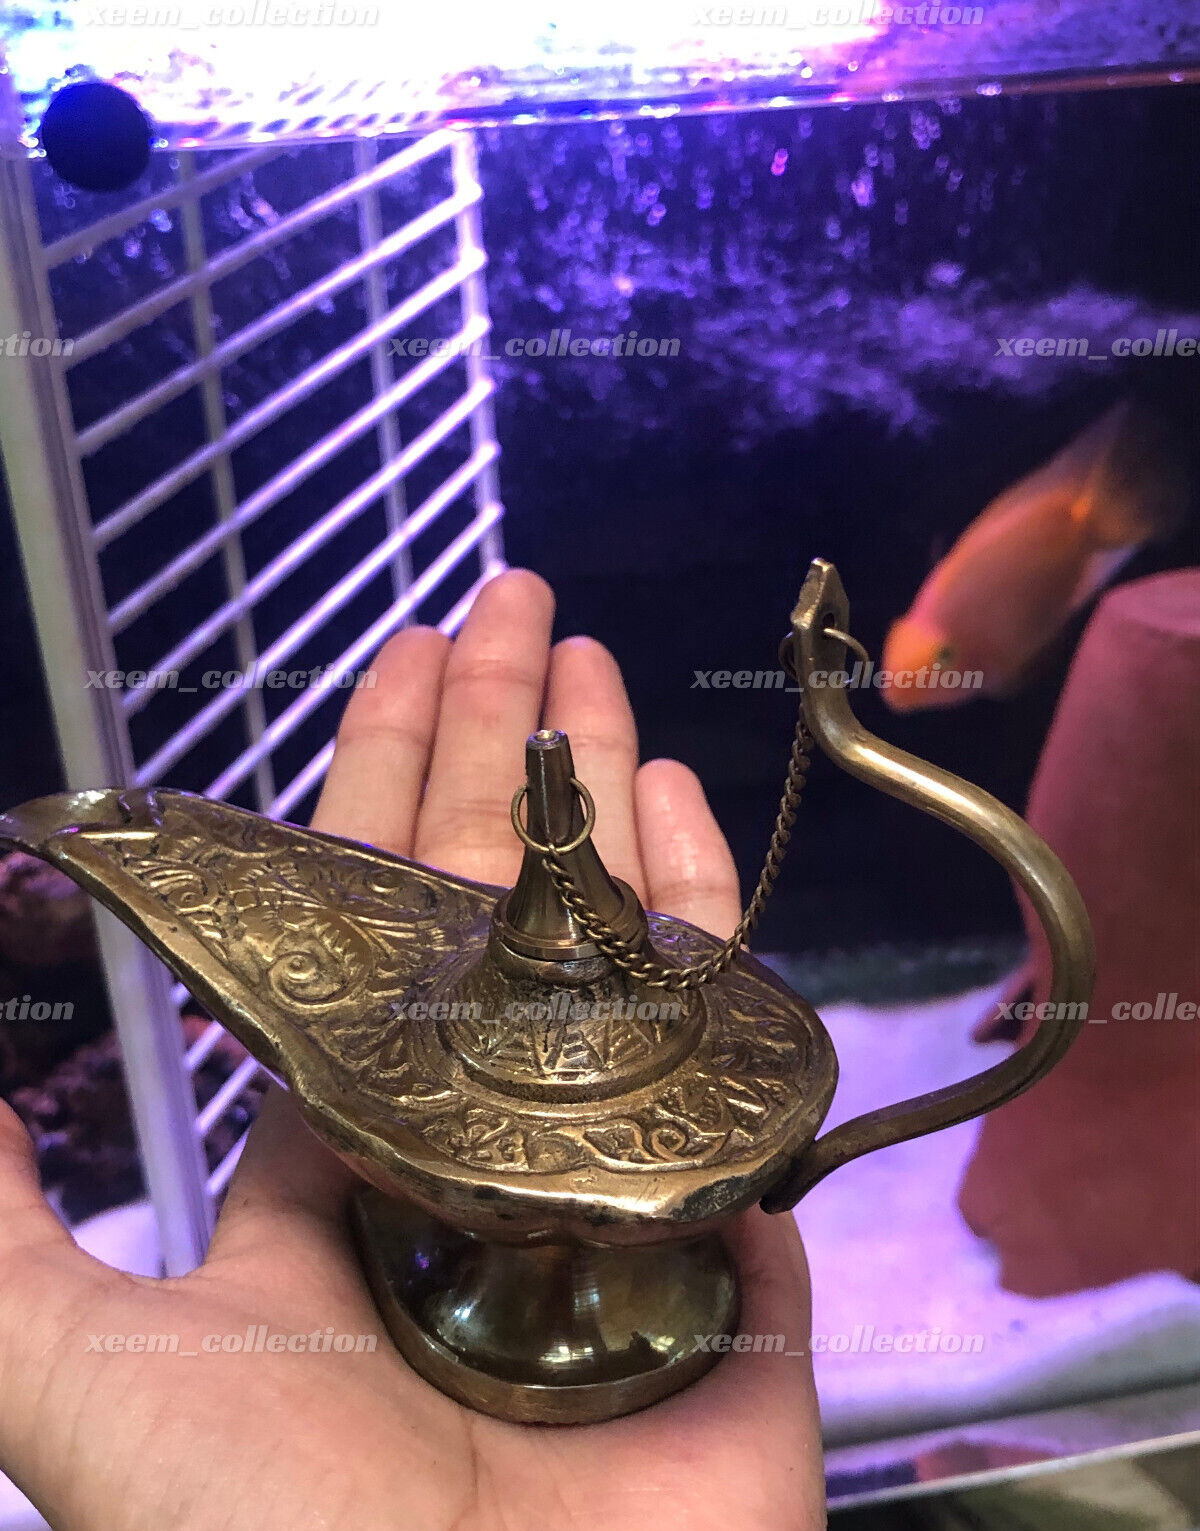 Antique Brass Aladin Genie Oil Lamp Aladdin Chirag Incense Burner Vintage Gift